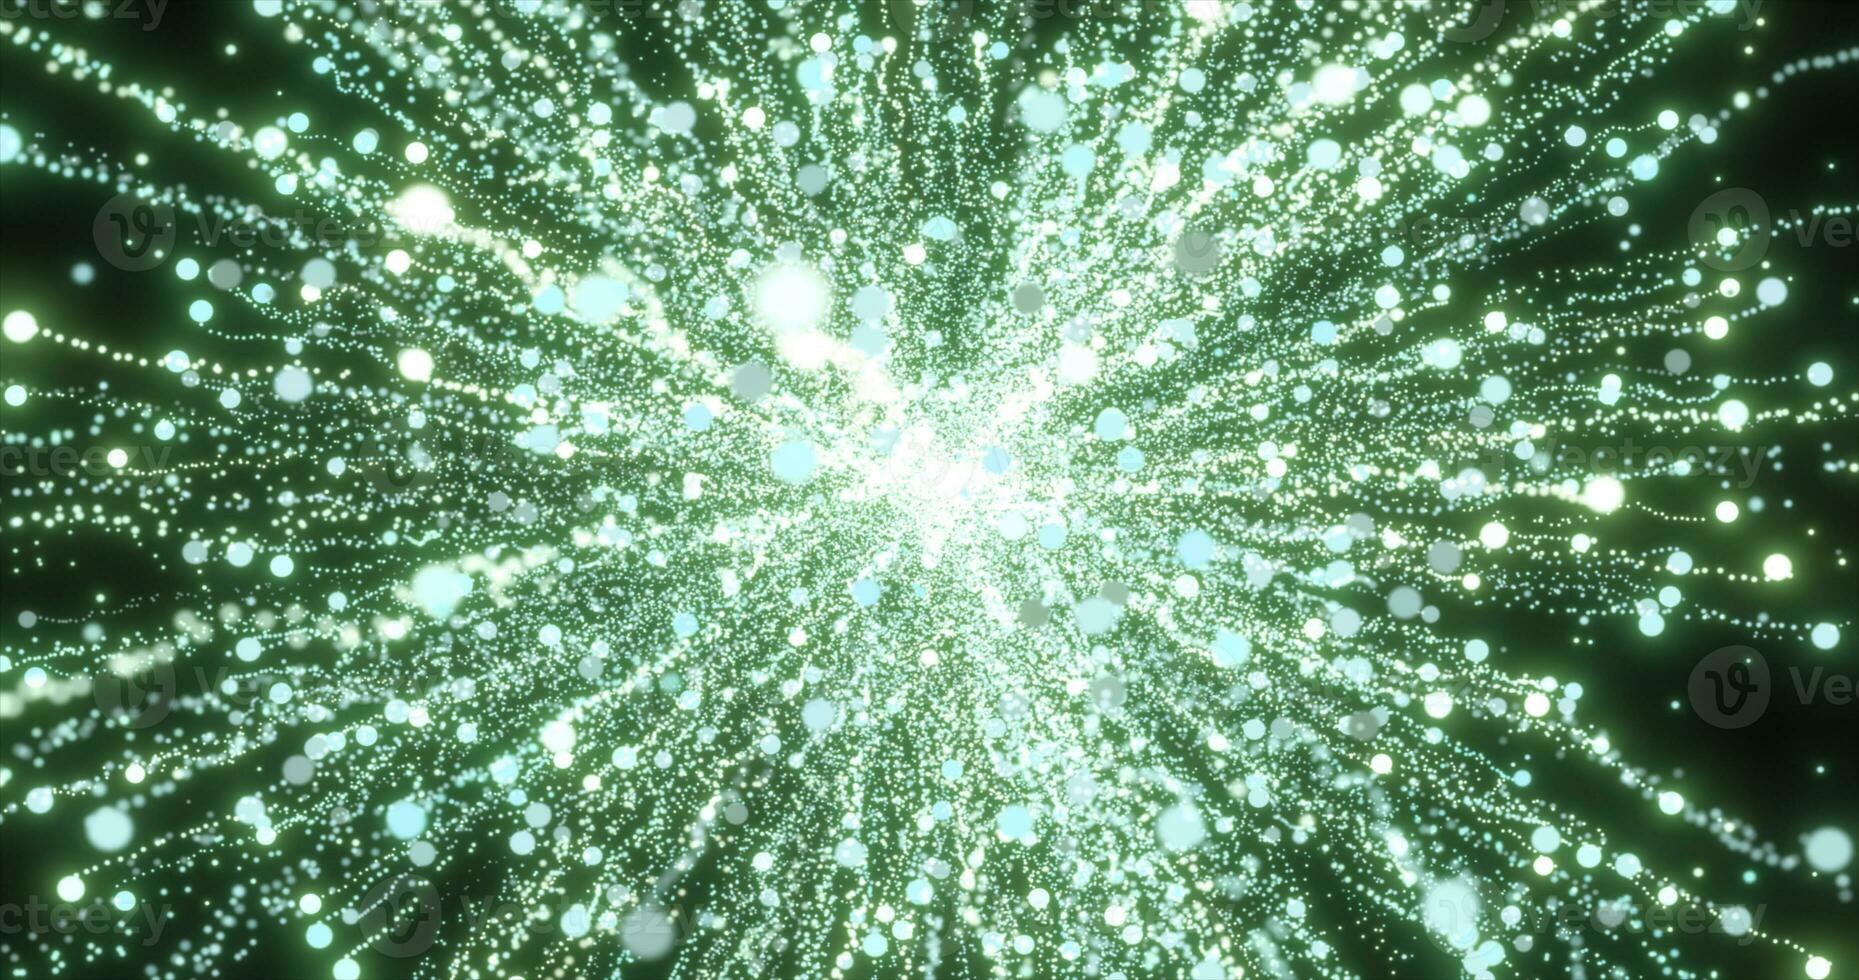 abstract groen energie vuurwerk deeltje groet magisch helder gloeiend futuristische hi-tech met vervagen effect en bokeh achtergrond foto